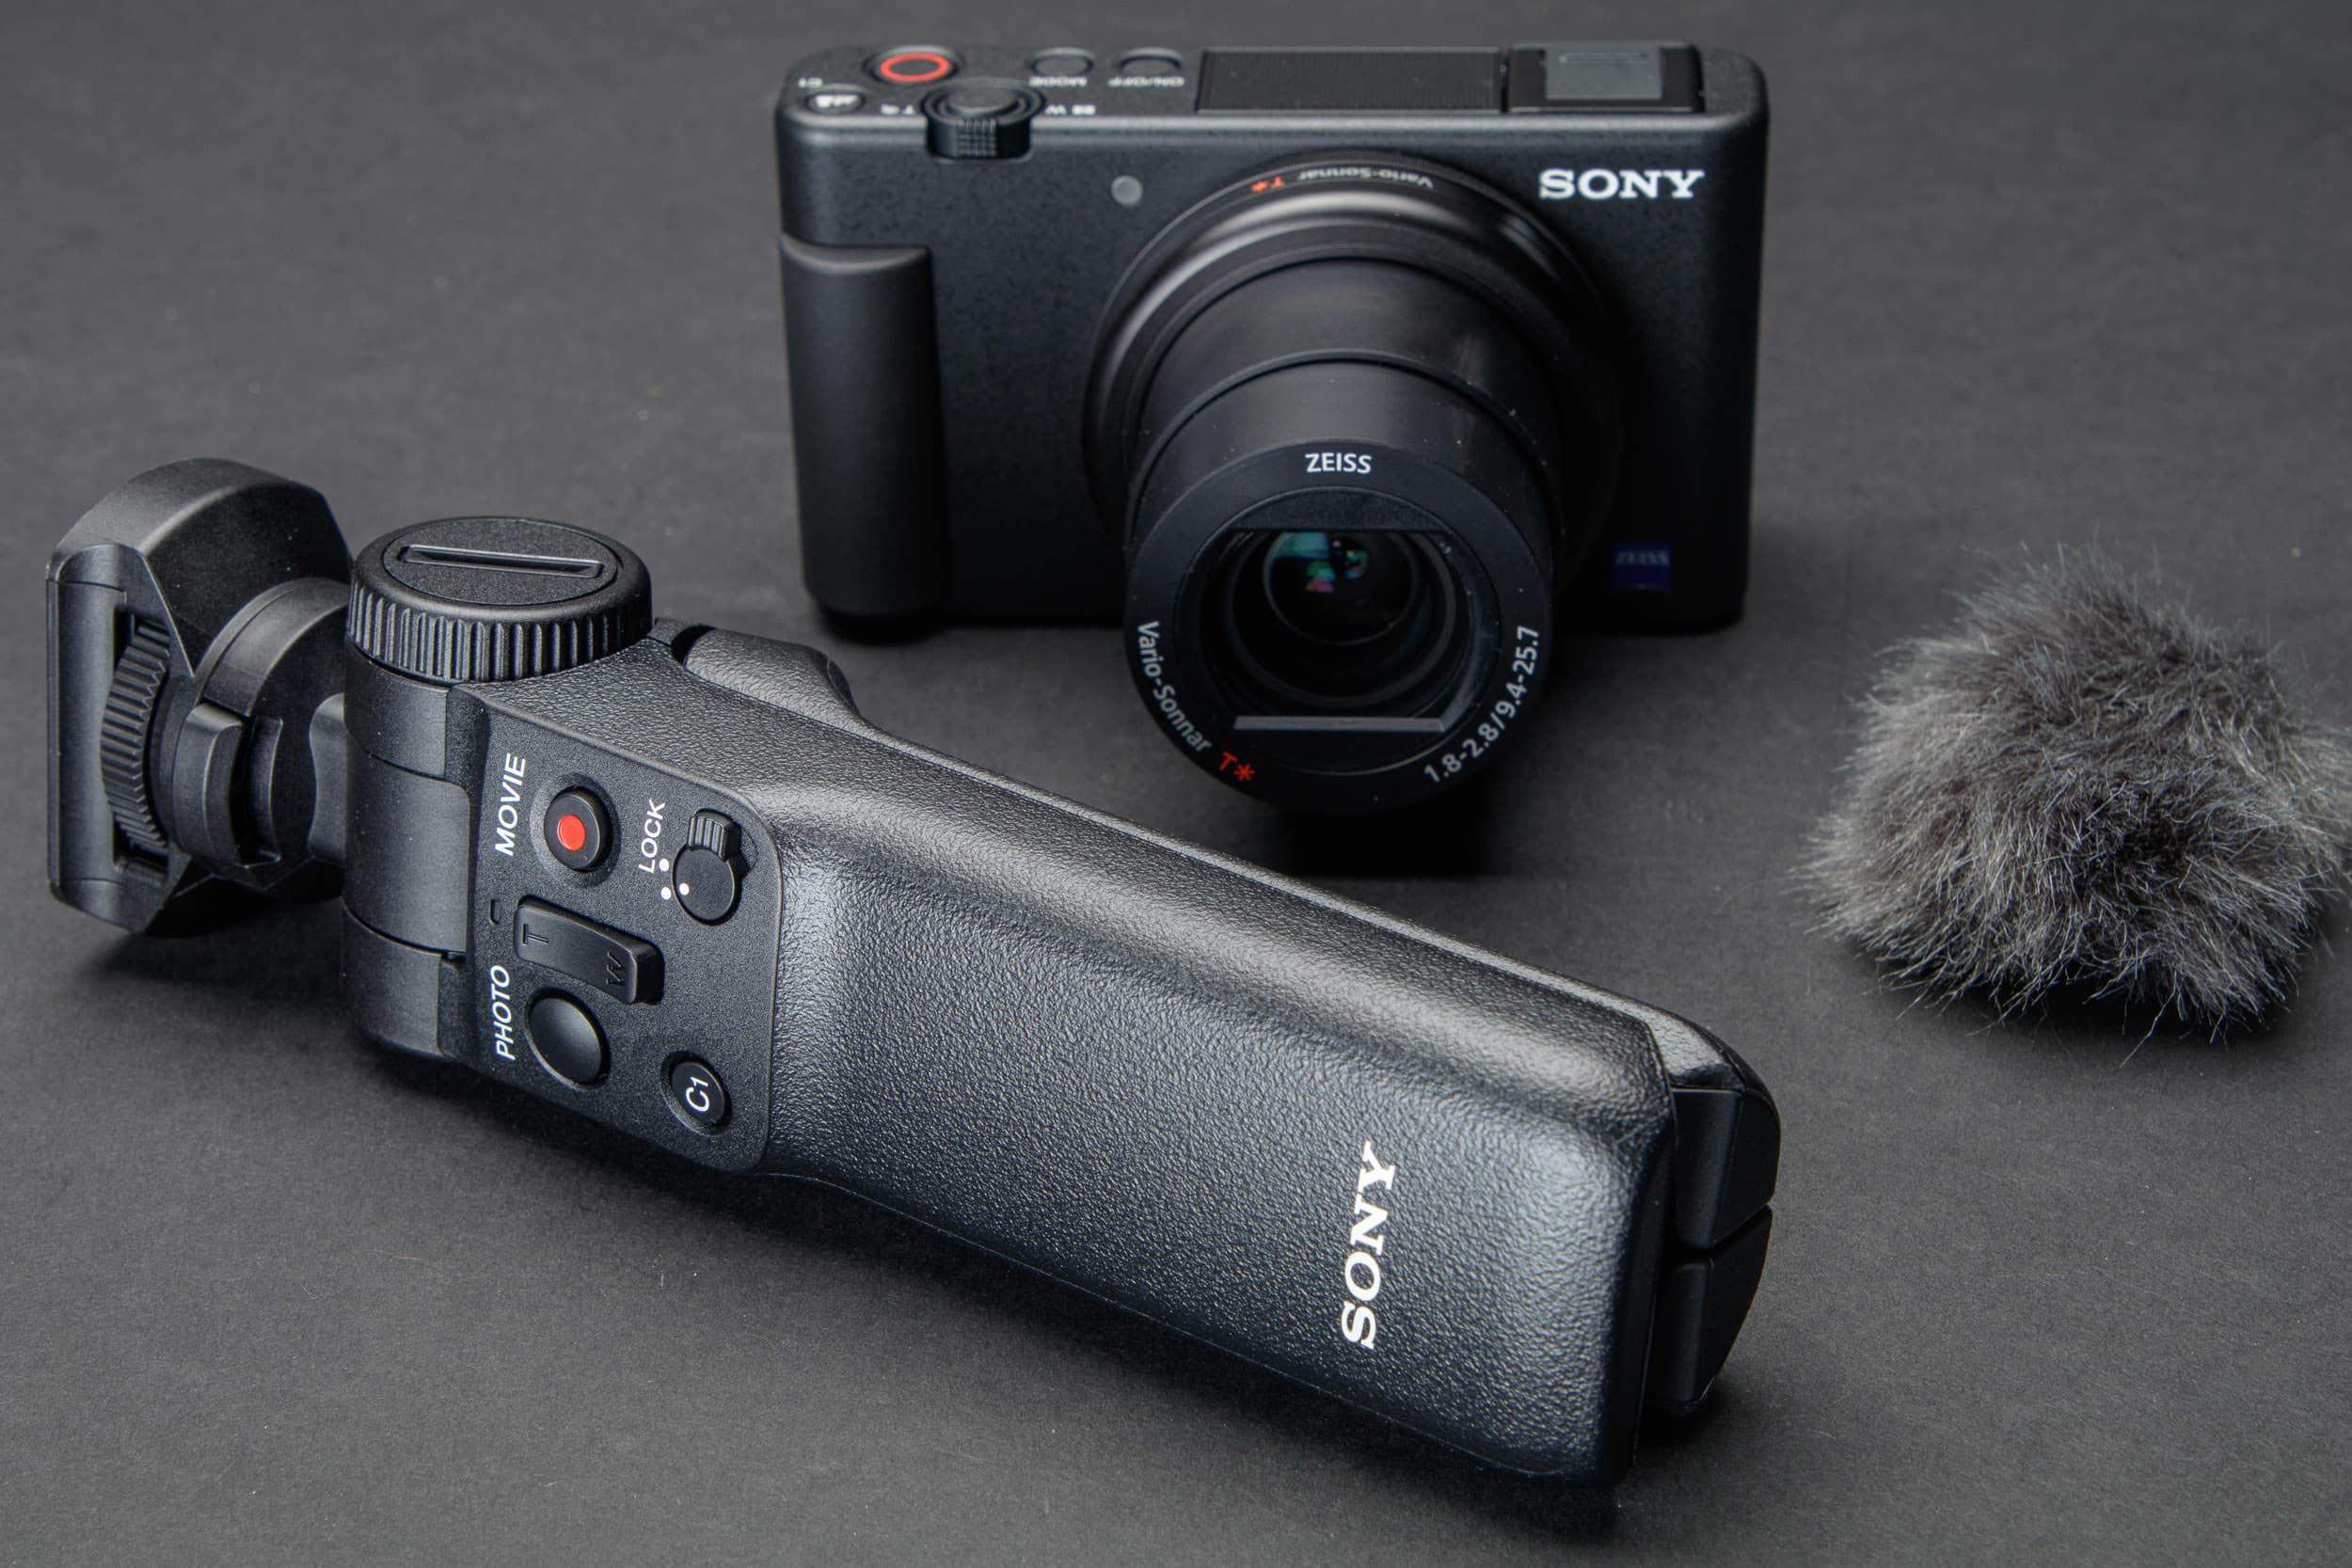 Khuyến mãi máy ảnh Sony ZV-1 tại WinWinStore trong tháng 11